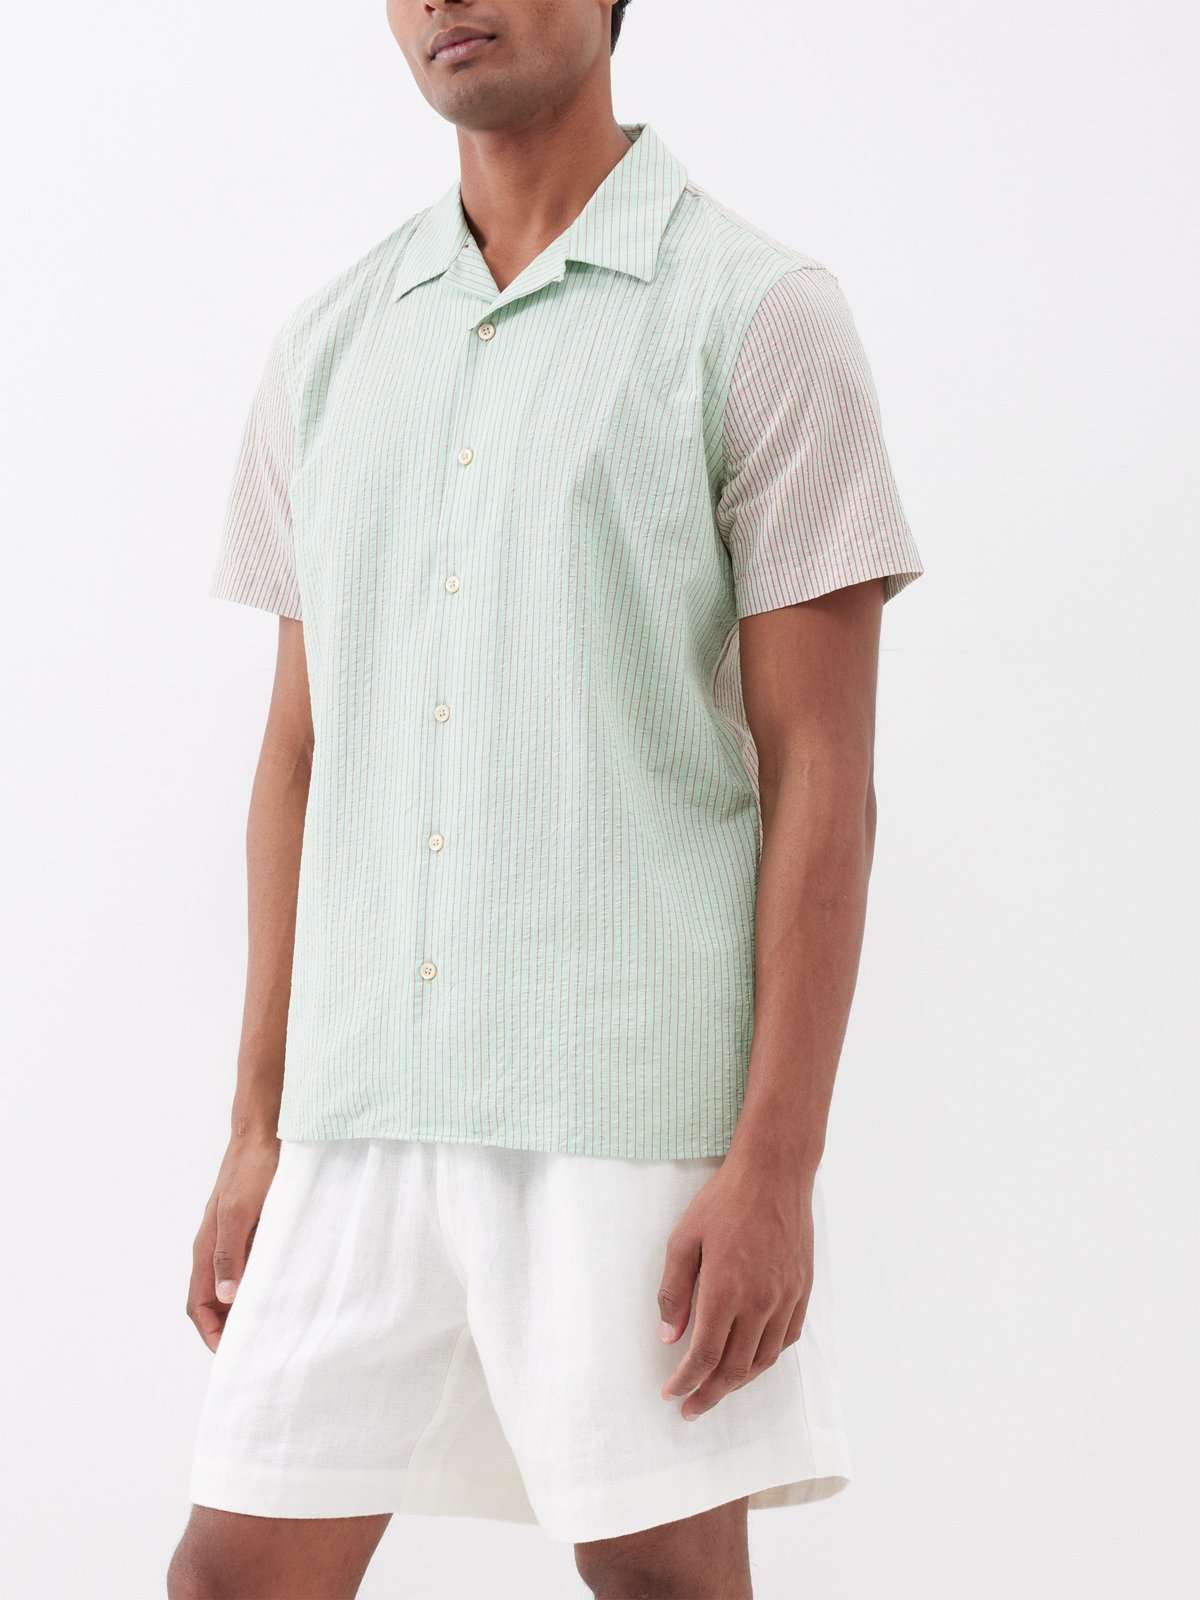 Полосатая хлопковая рубашка с короткими рукавами